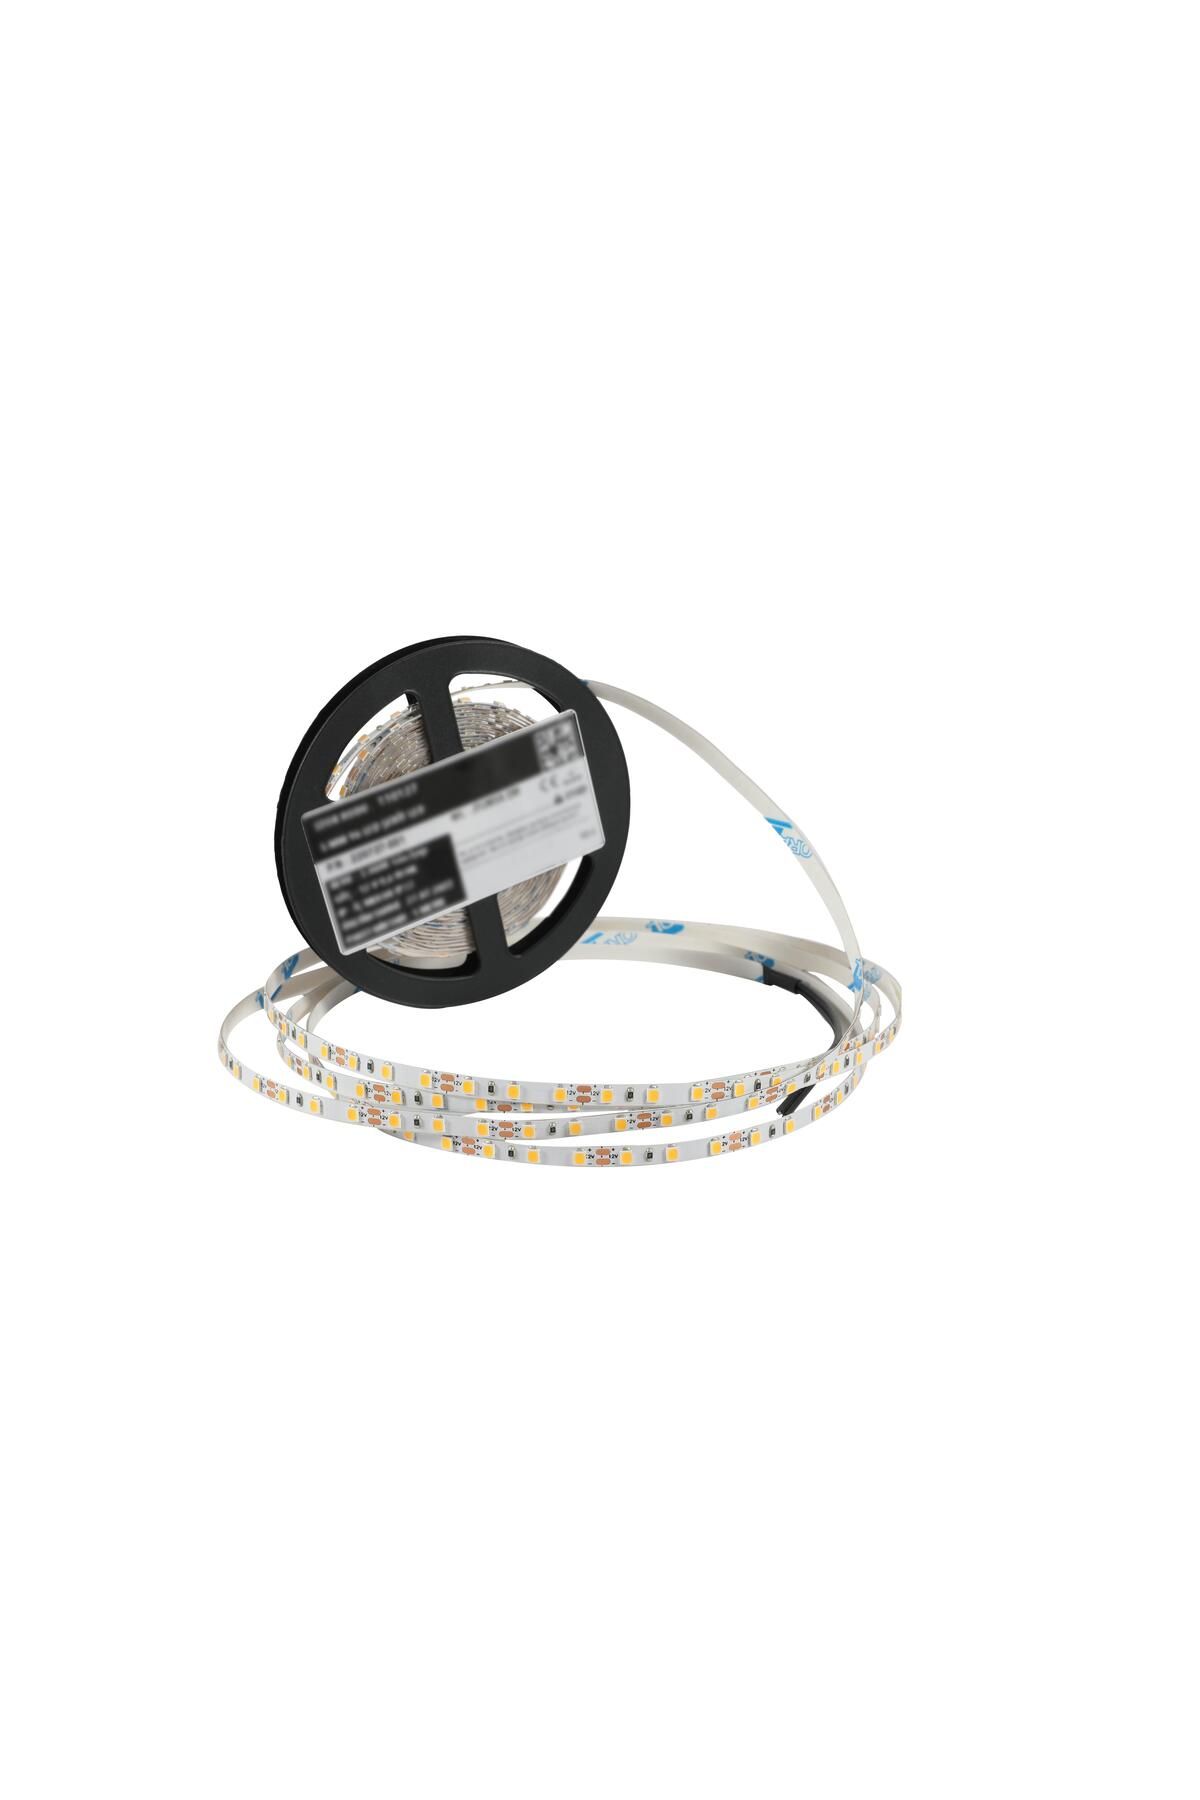 Osram 5 Metre Şerit Led Osram Çipli İç Mekan IP20 12 V 9,6 W 3.000K Gün Işığı